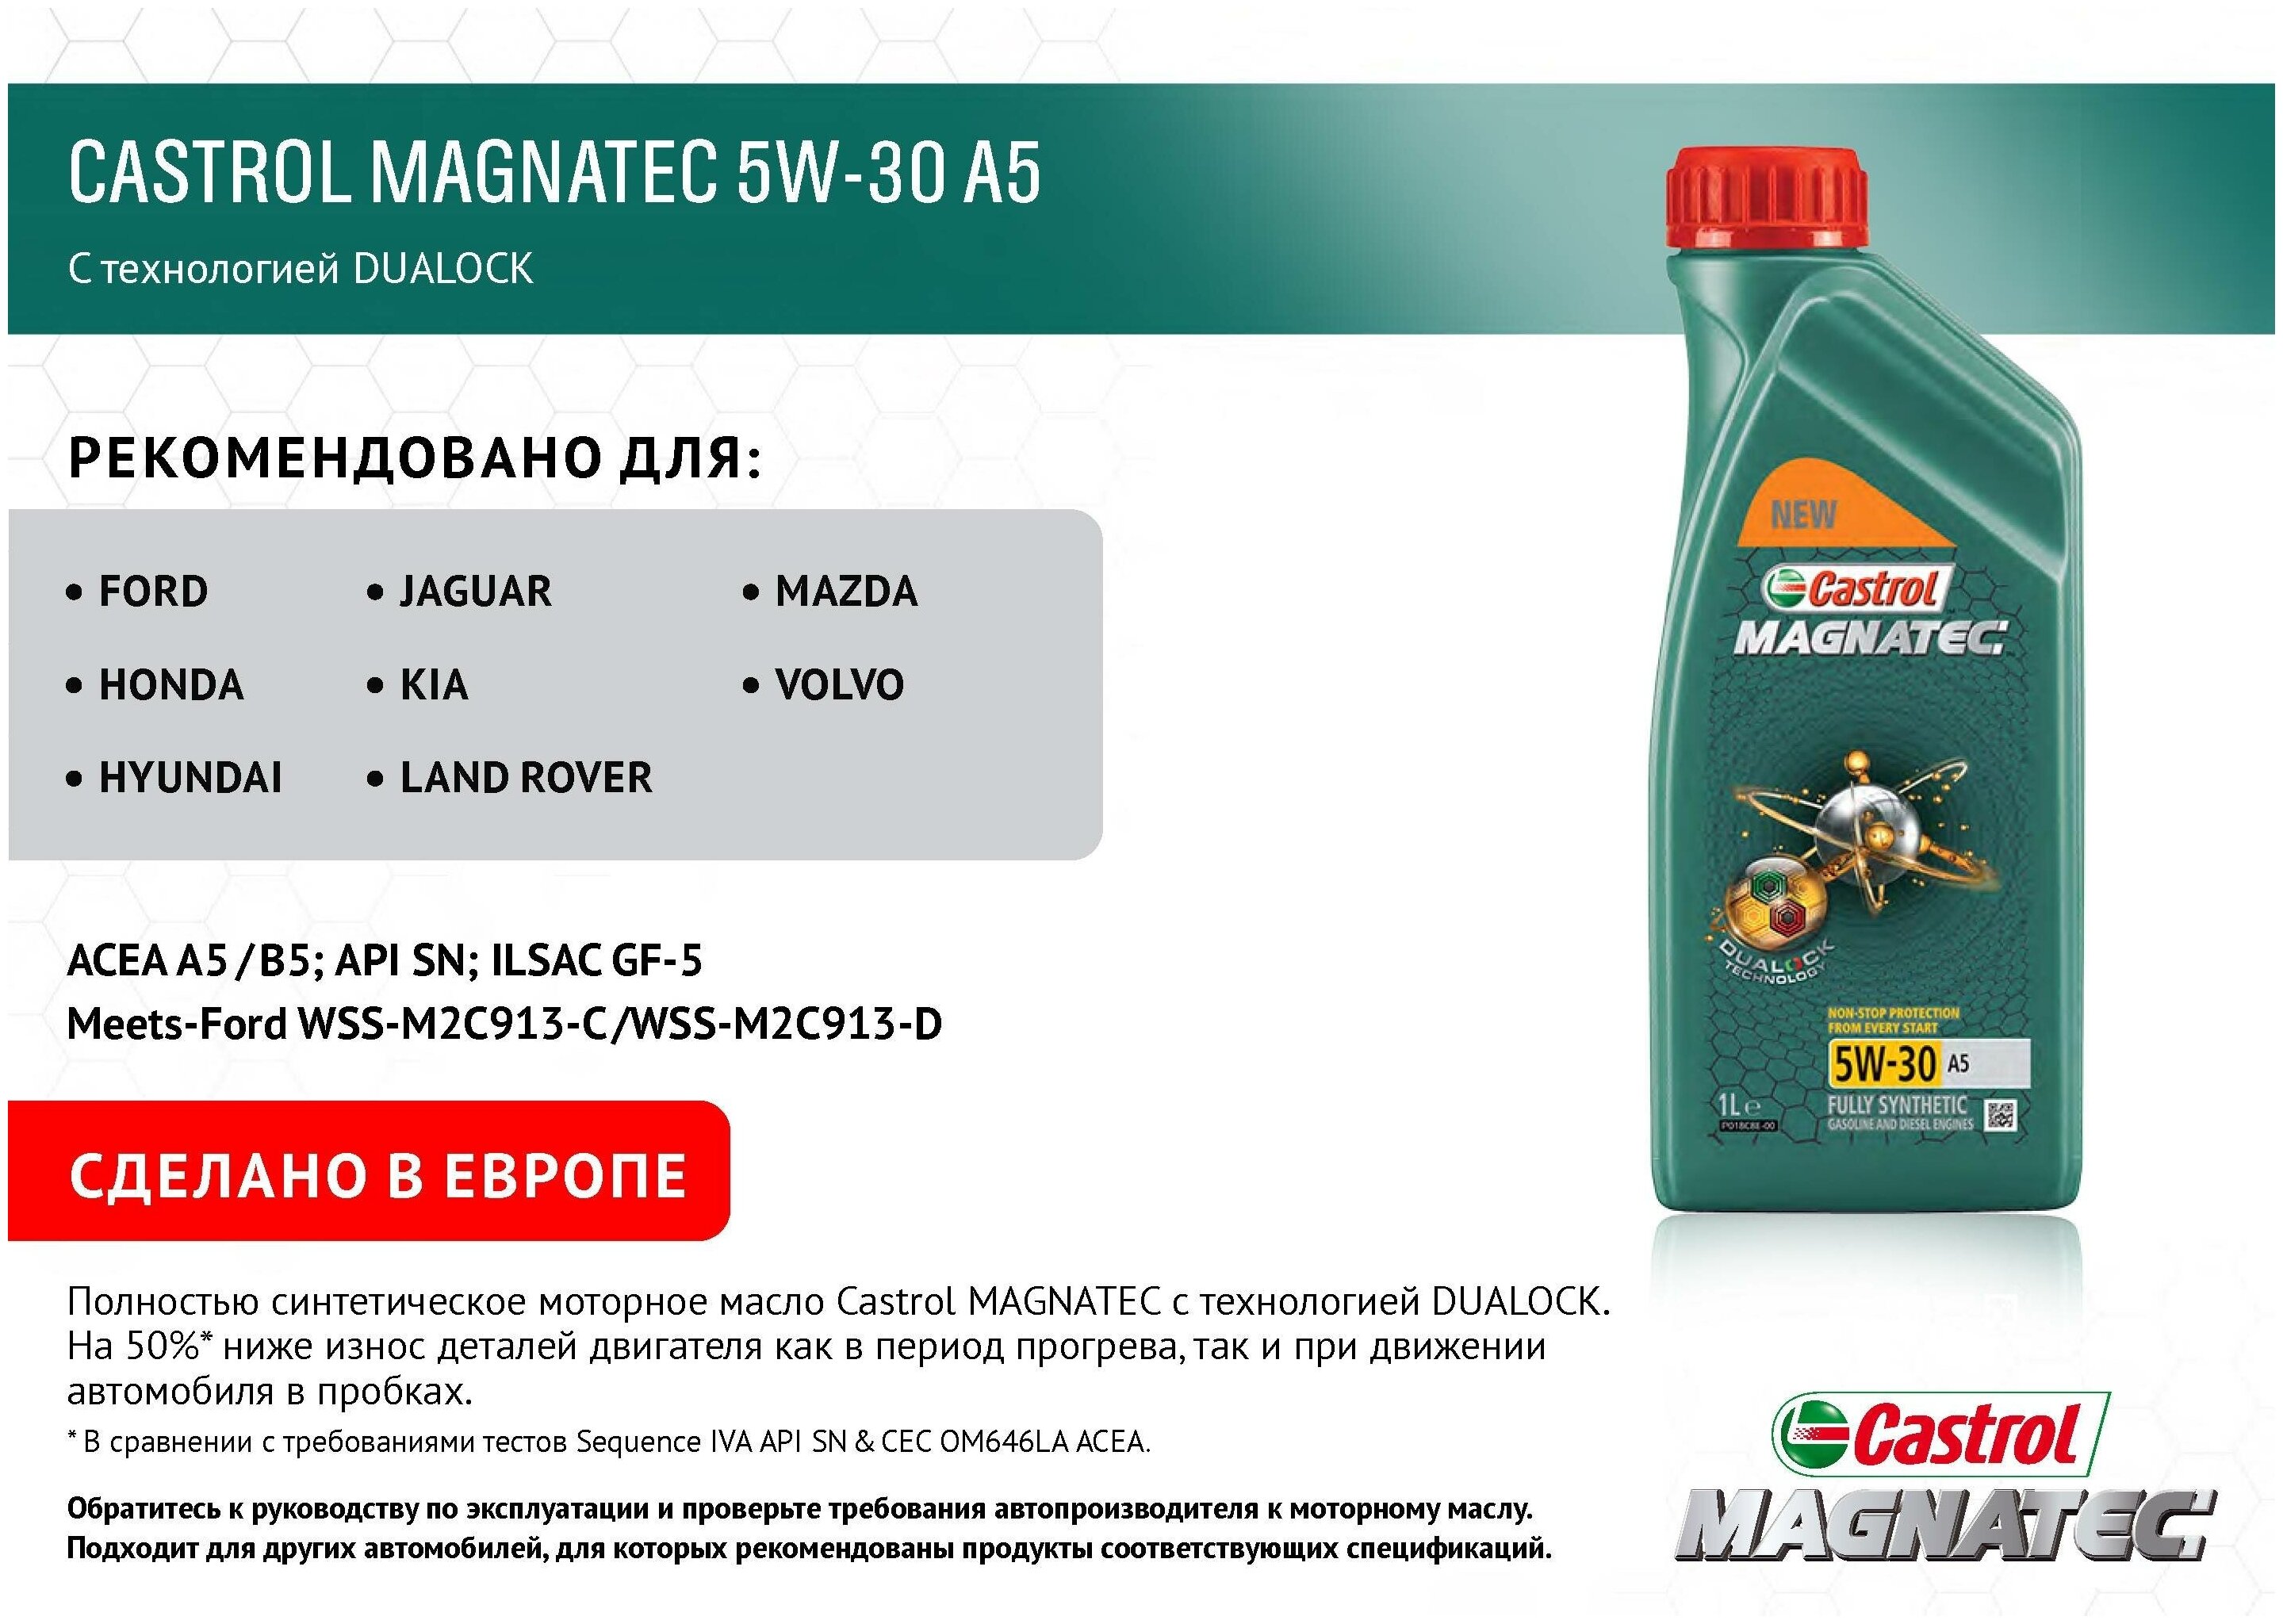 Castrol magnatec 5w-30 ap синтетическое масло характеристики и отзывы